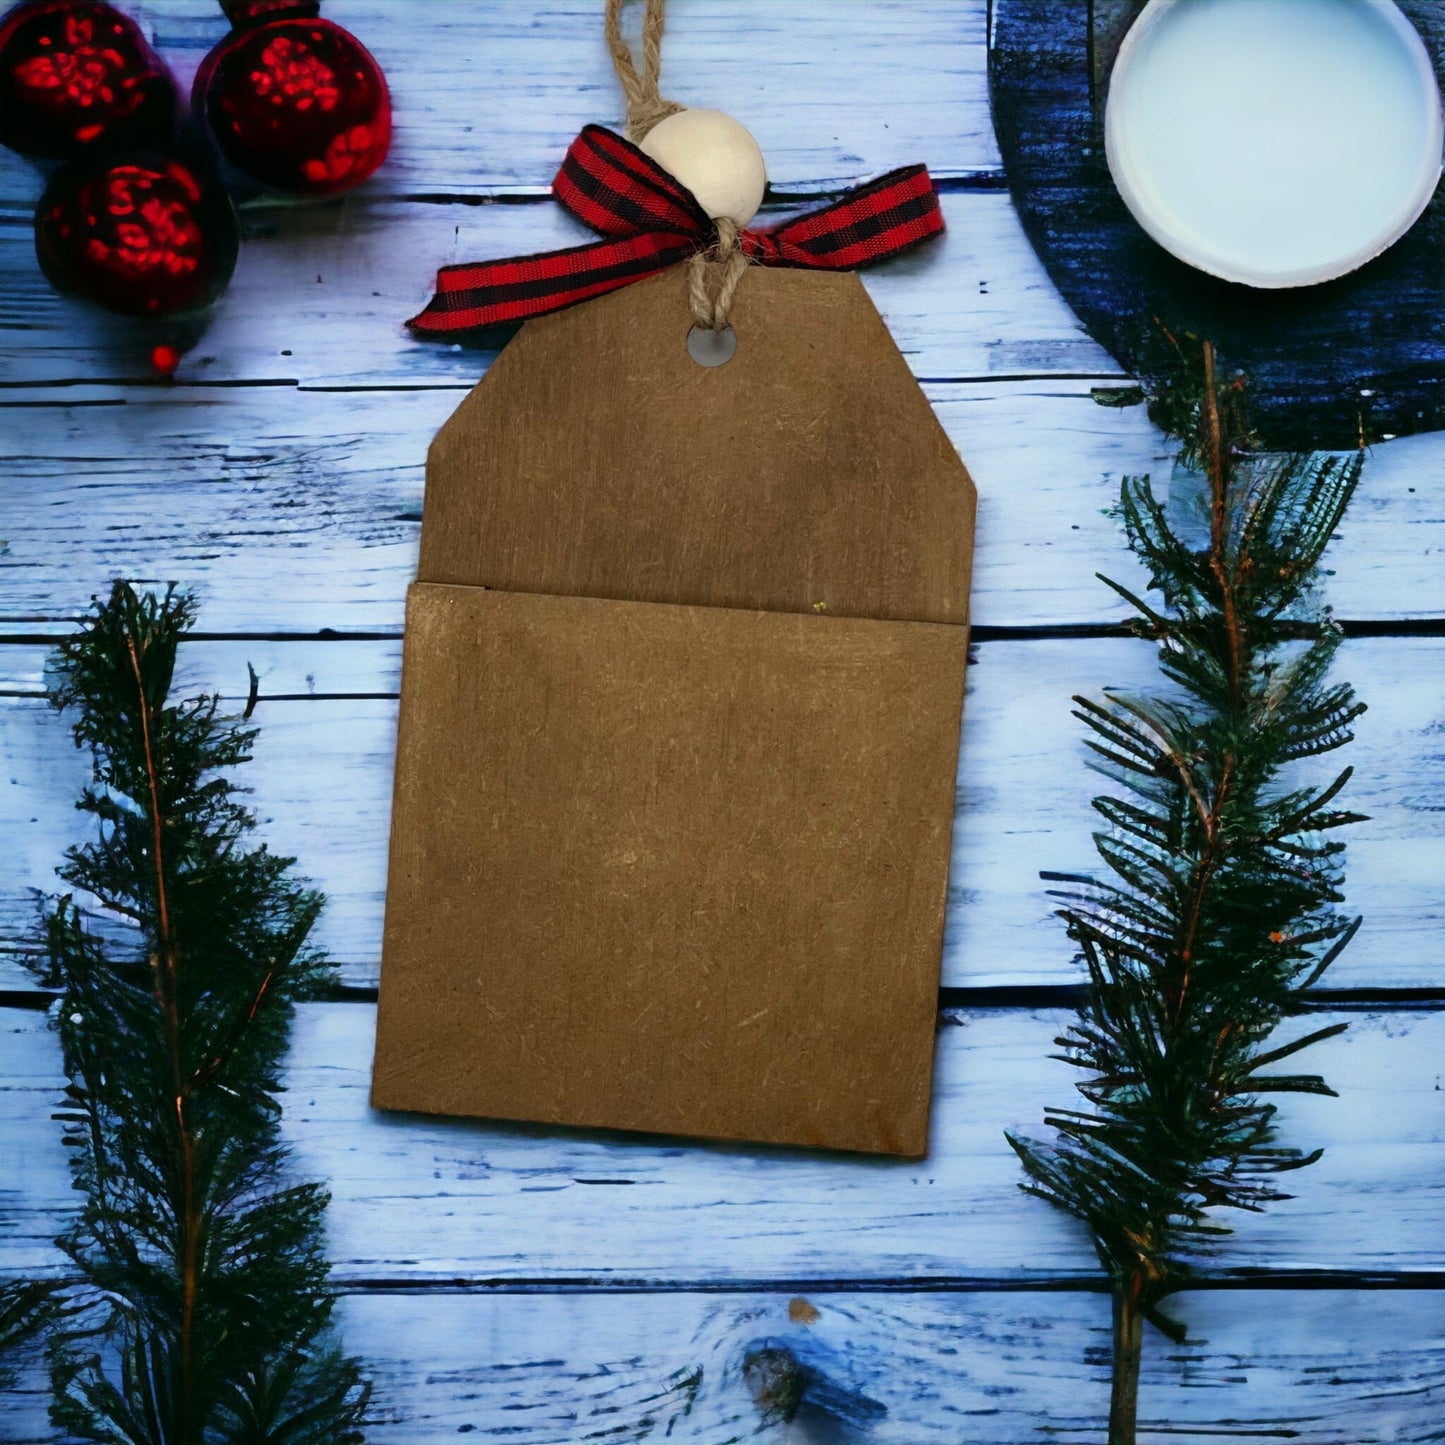 Christmas Ornament - Winter Gloves - Money/Gift Card Holder